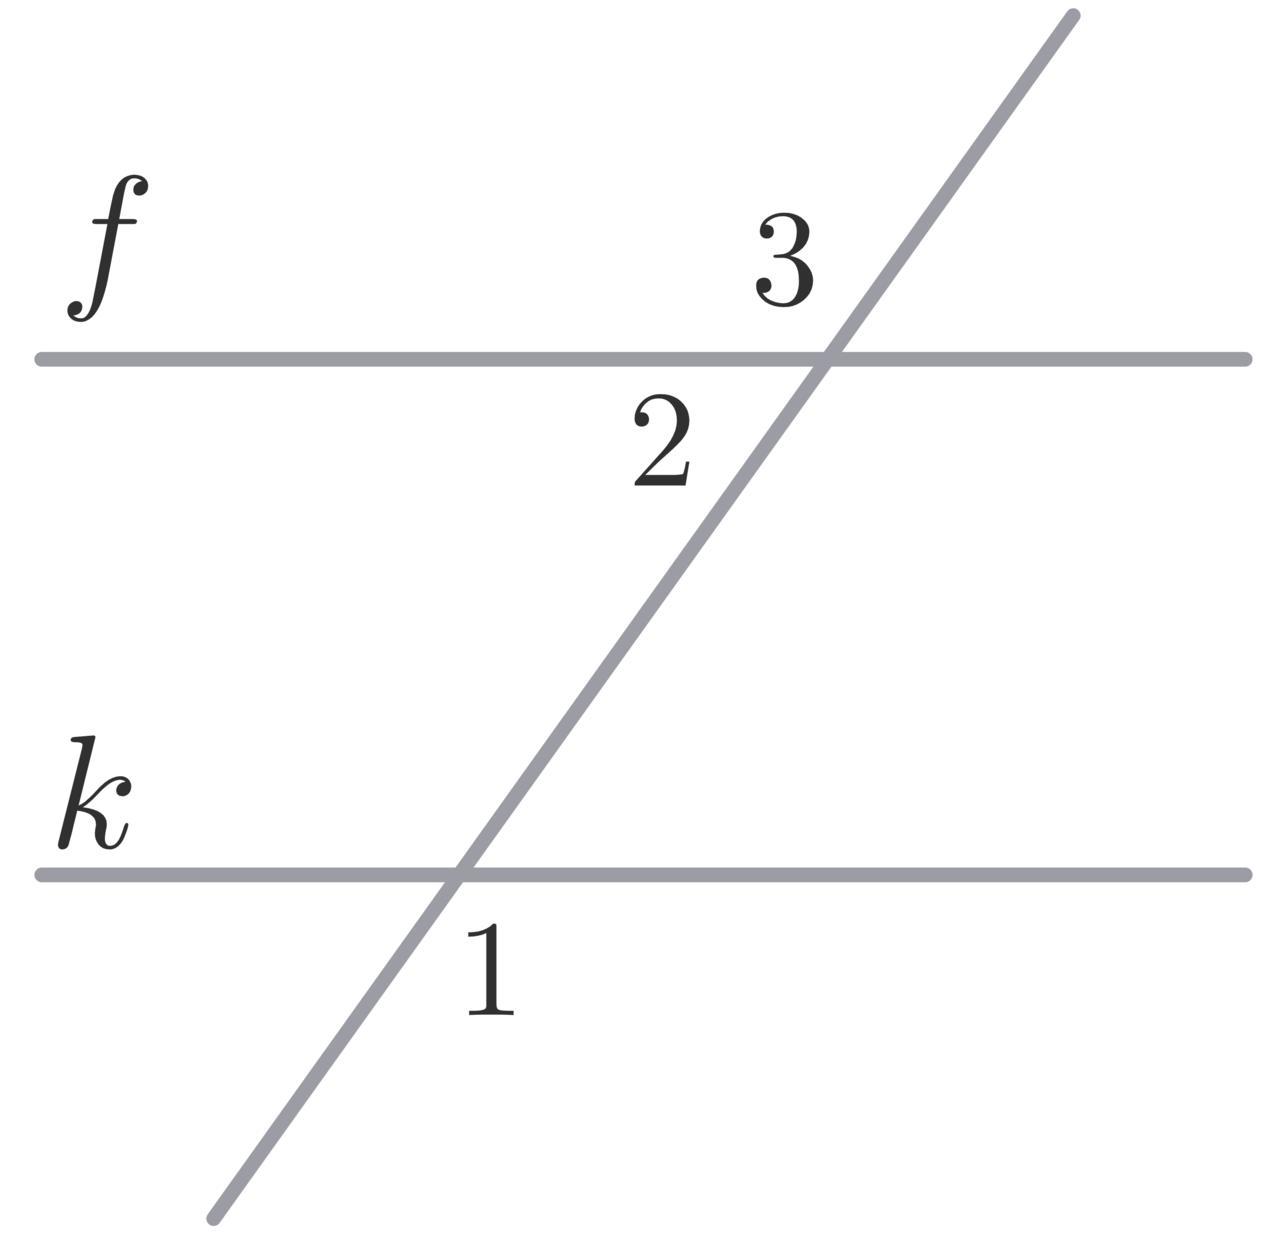 А параллельна в найти x. Соответственные углы. Угол 116 градусов. Найдите угол 3. Прямые f и k параллельны. Найдите ∠ 3, если ∠ 1= 102 ∘ (см.рисунок)..